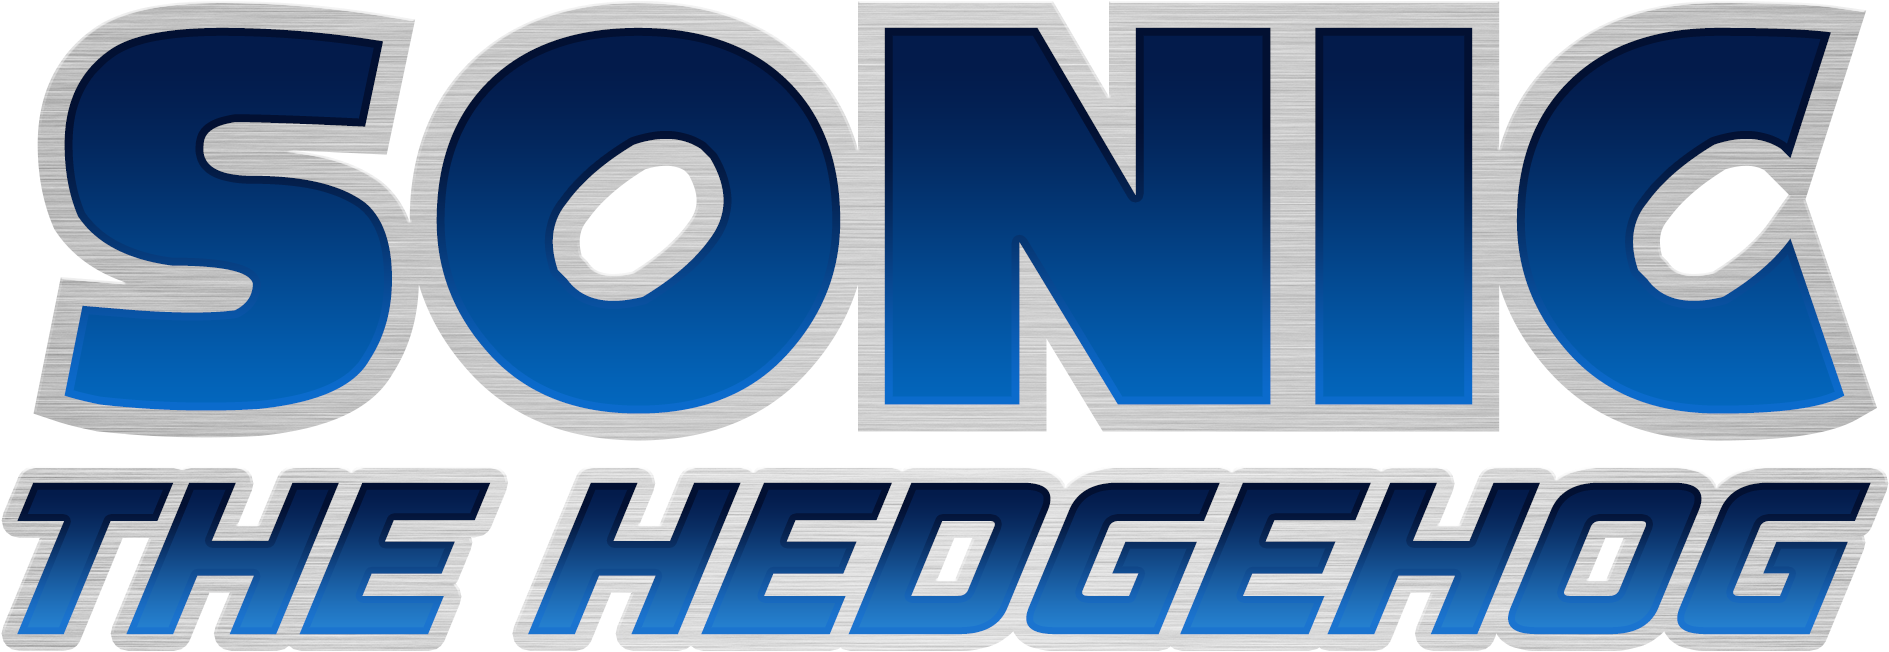 Sonic The Hedgehog Logo Png Transparent Image - Sonic The Hedgehog Lettering (2015x848), Png Download